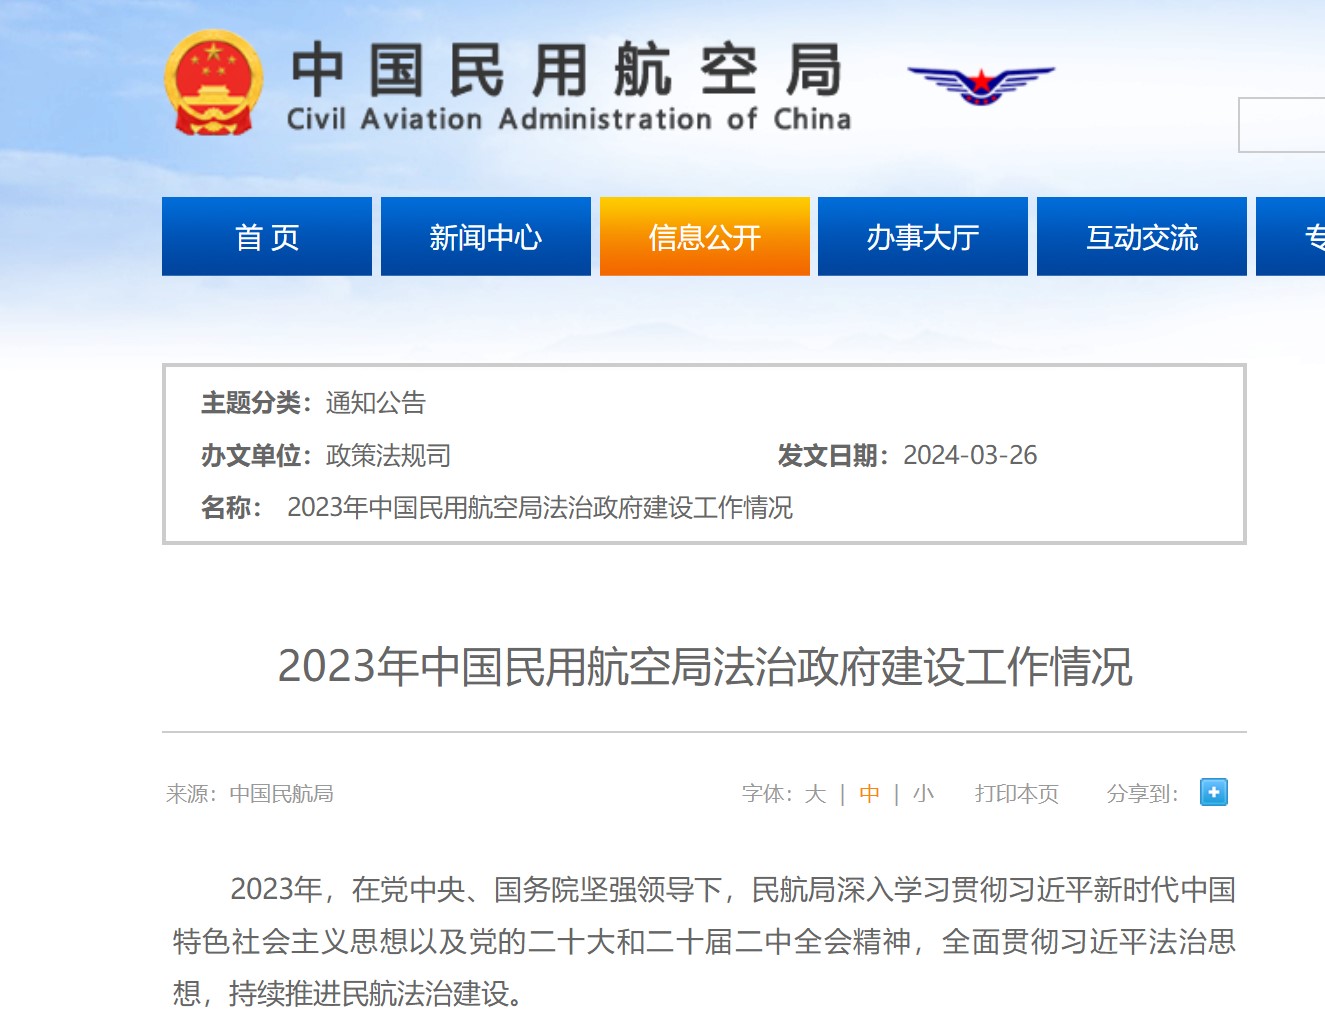 2023年中国民用航空局法治政府建设工作情况